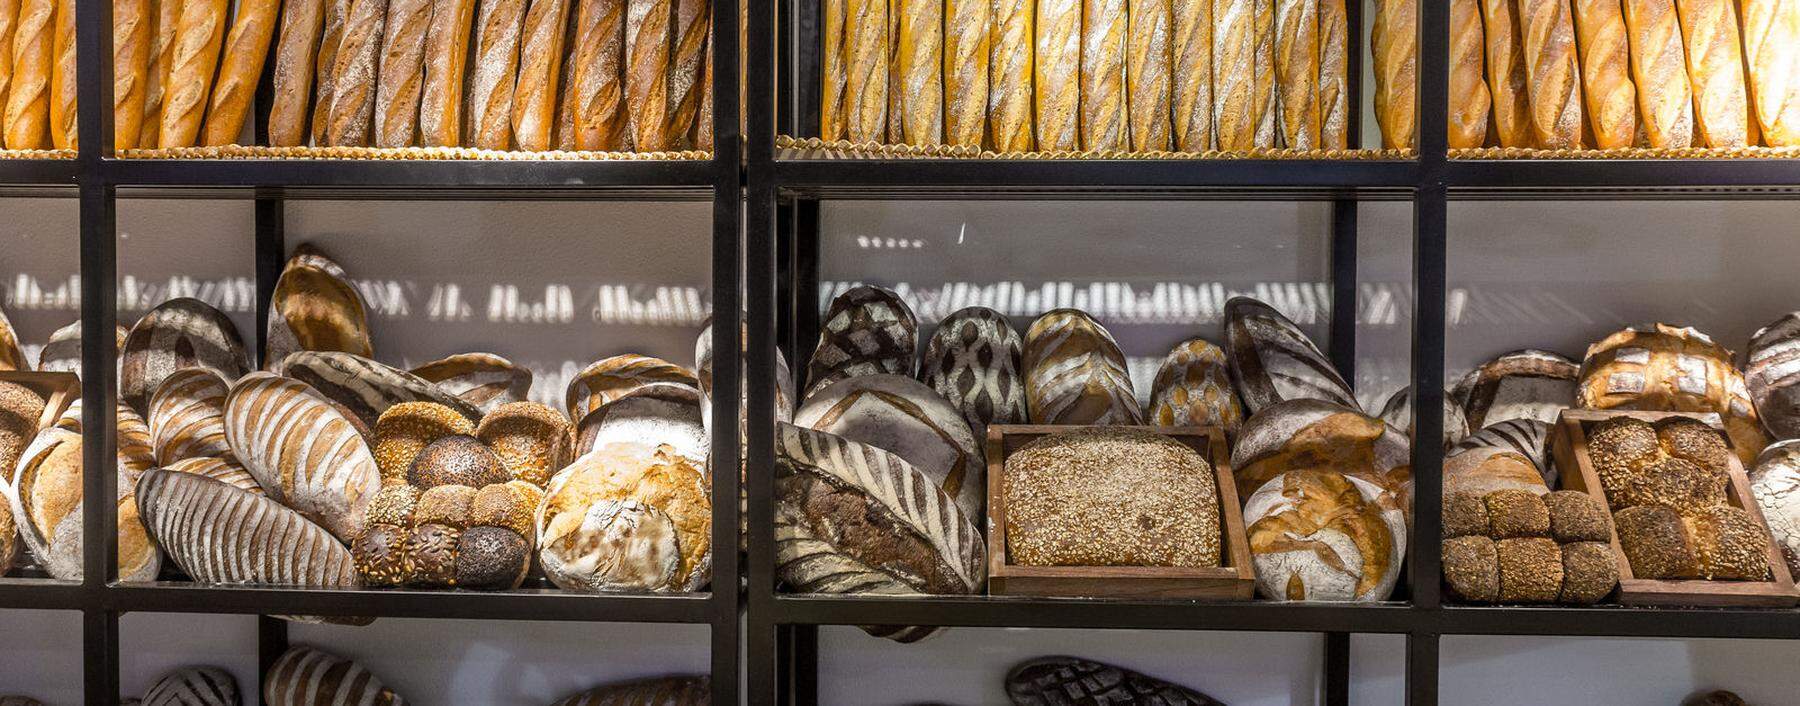 Brot wird am häufigsten weggeworfen: Mit einer neuen App kann man in Wien Bäckereien und Restaurants der Umgebung finden und Übriggebliebenes abholen.